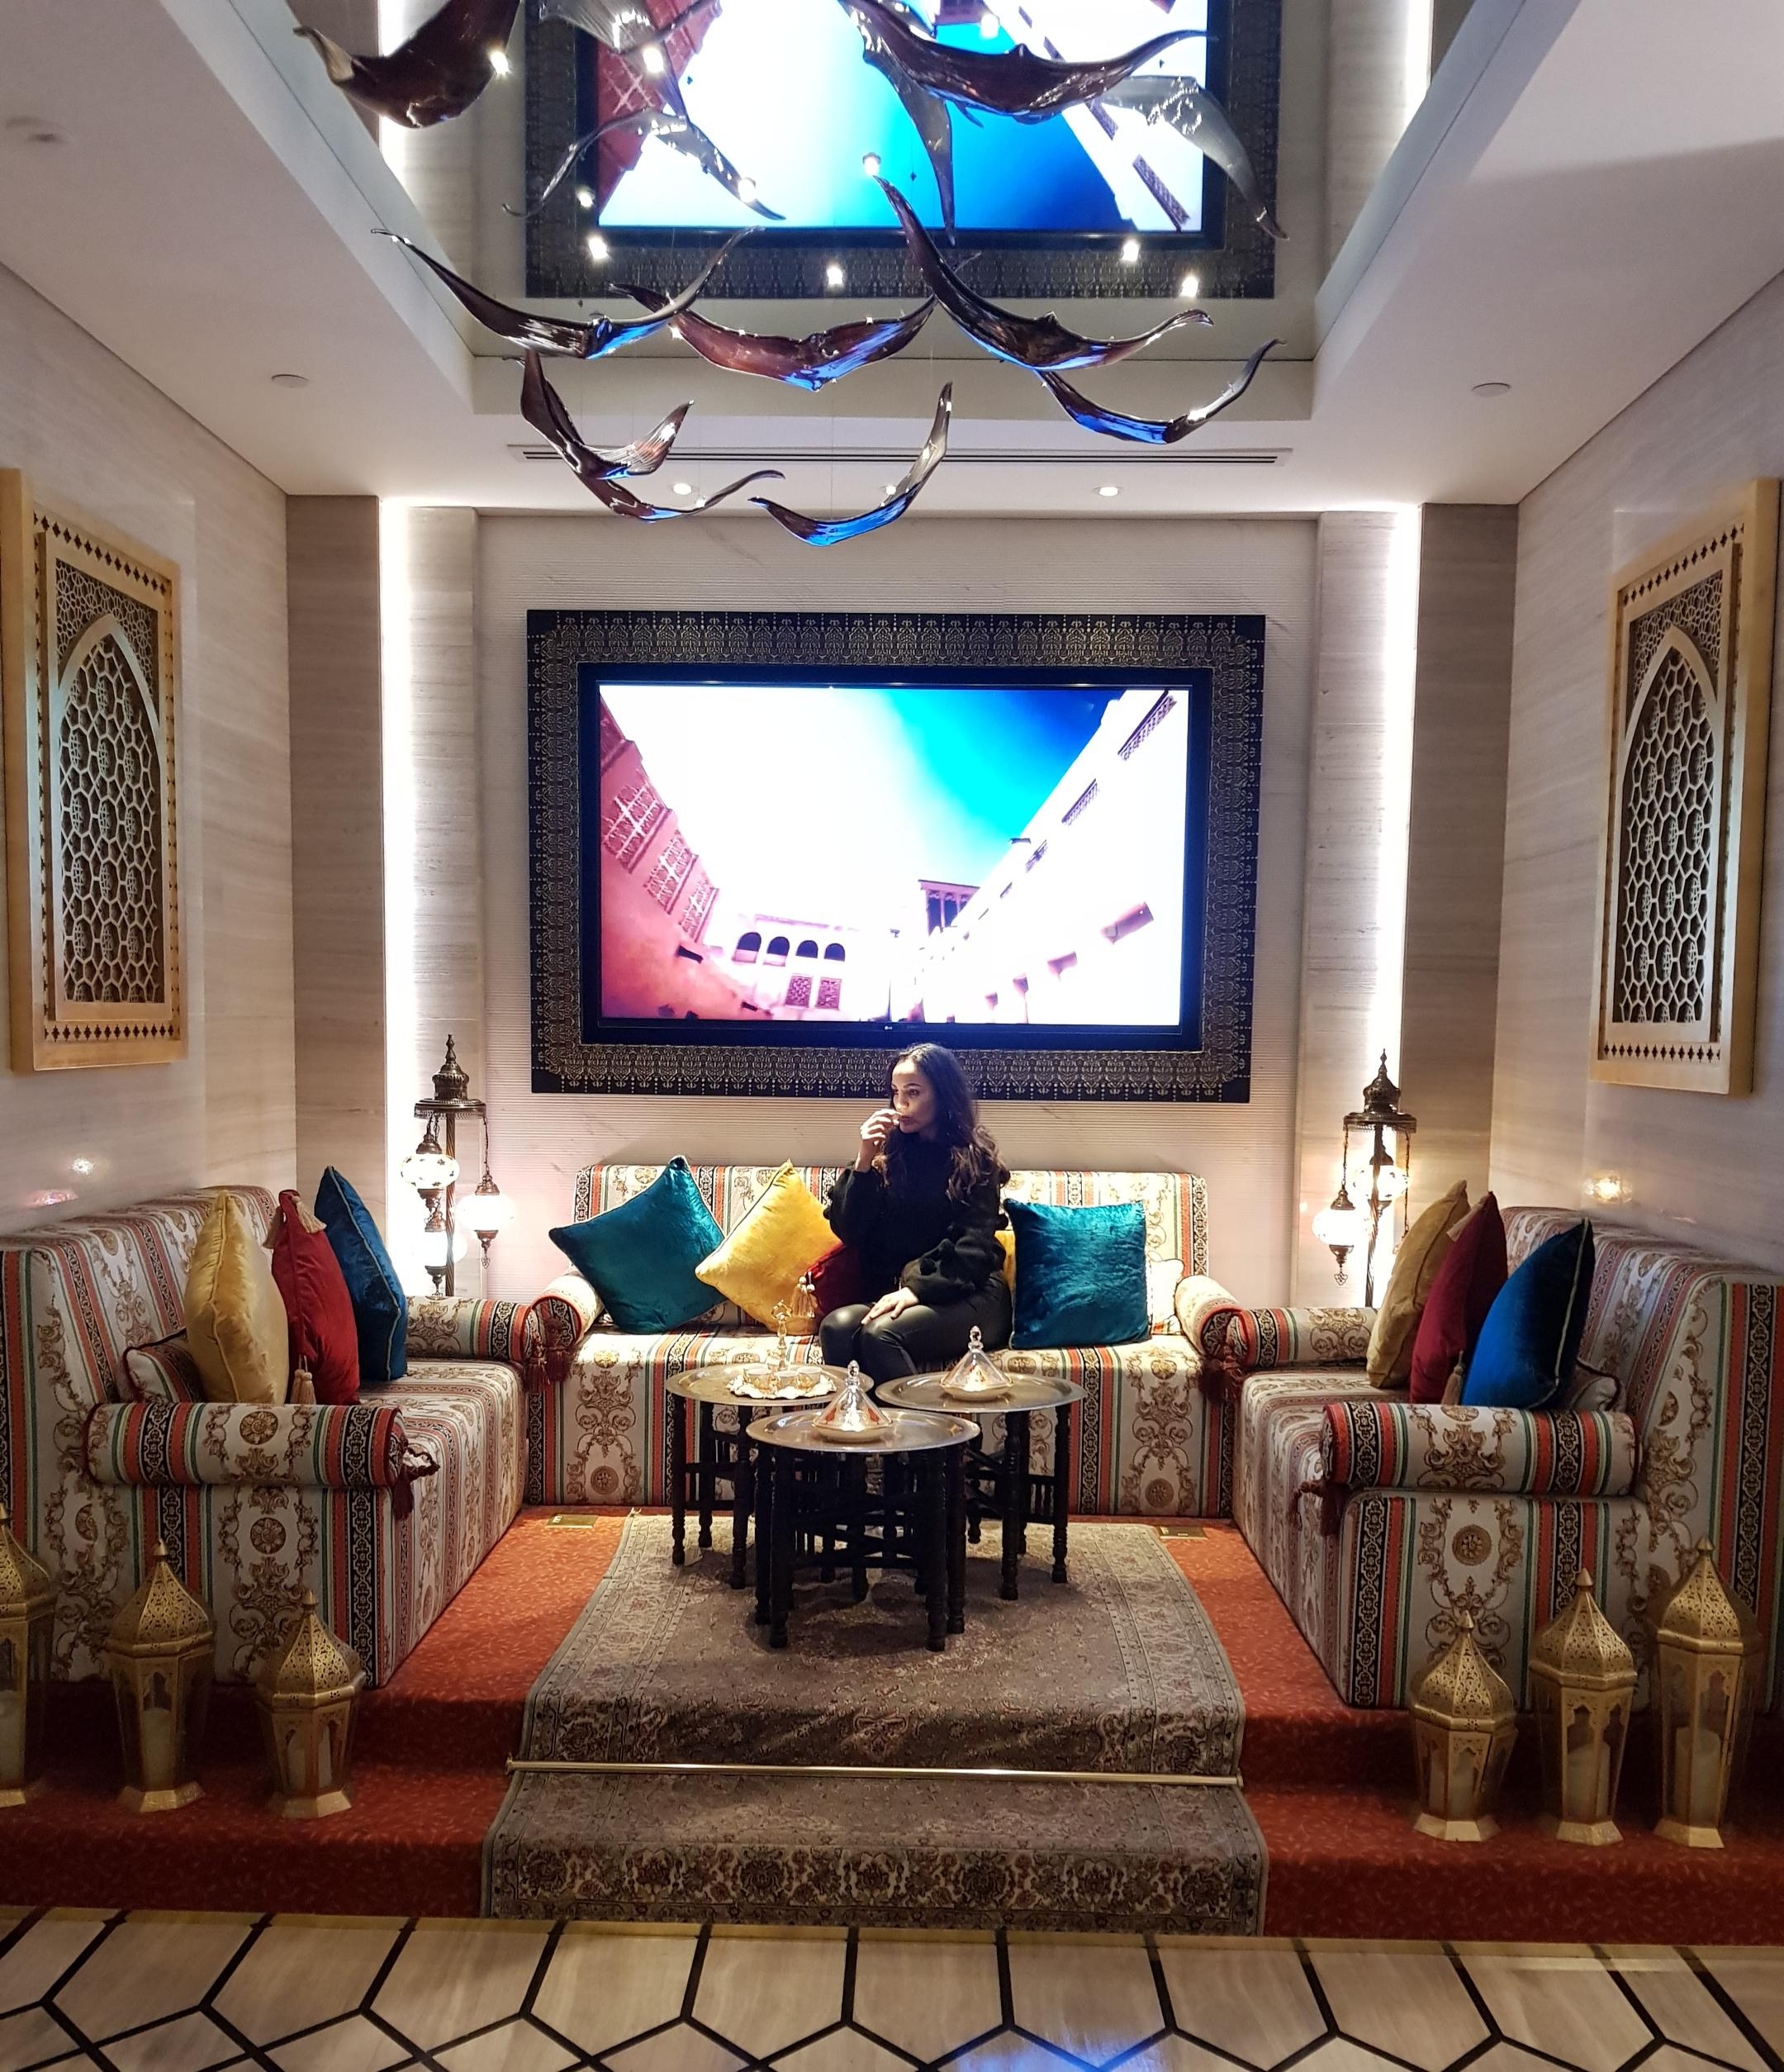 Dubai Style #couchliebt #dubai #wohnzimmer #oriental #orient